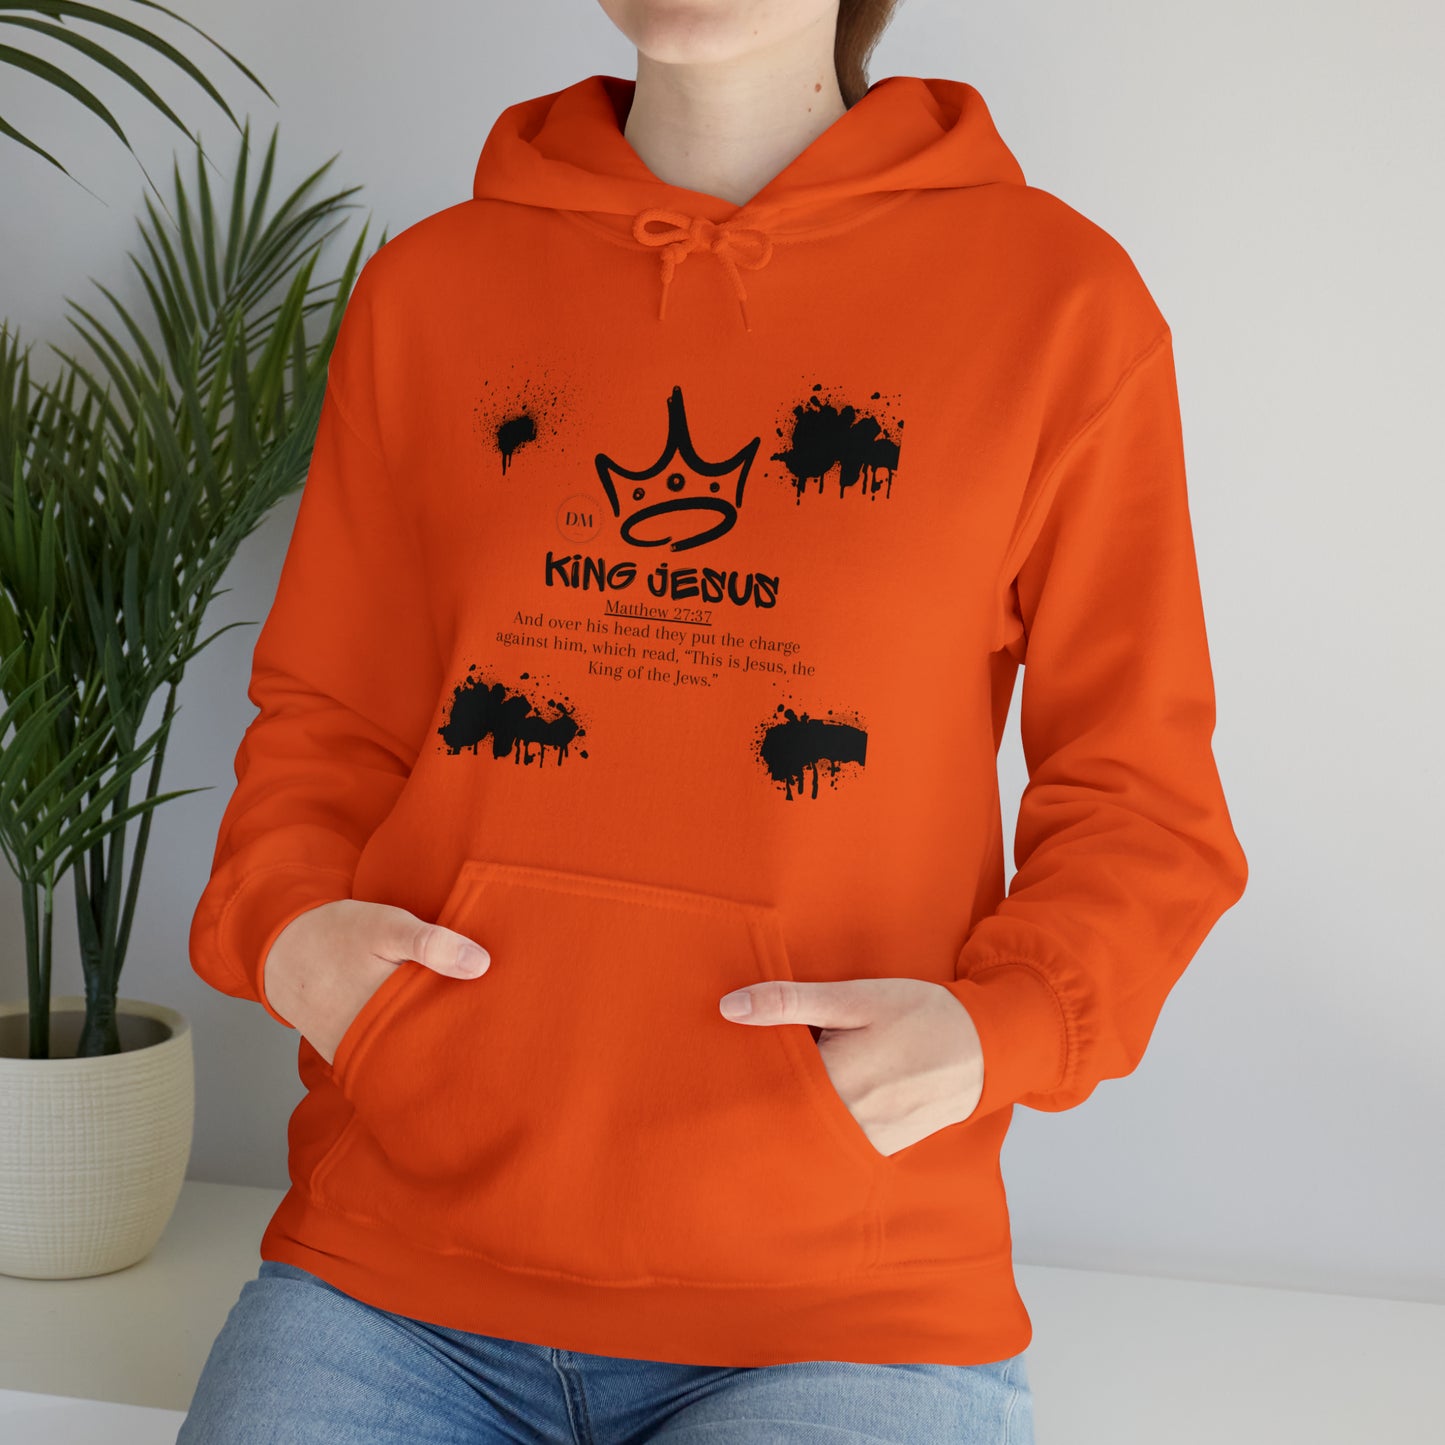 DM - King Jesus Hooded Sweatshirt